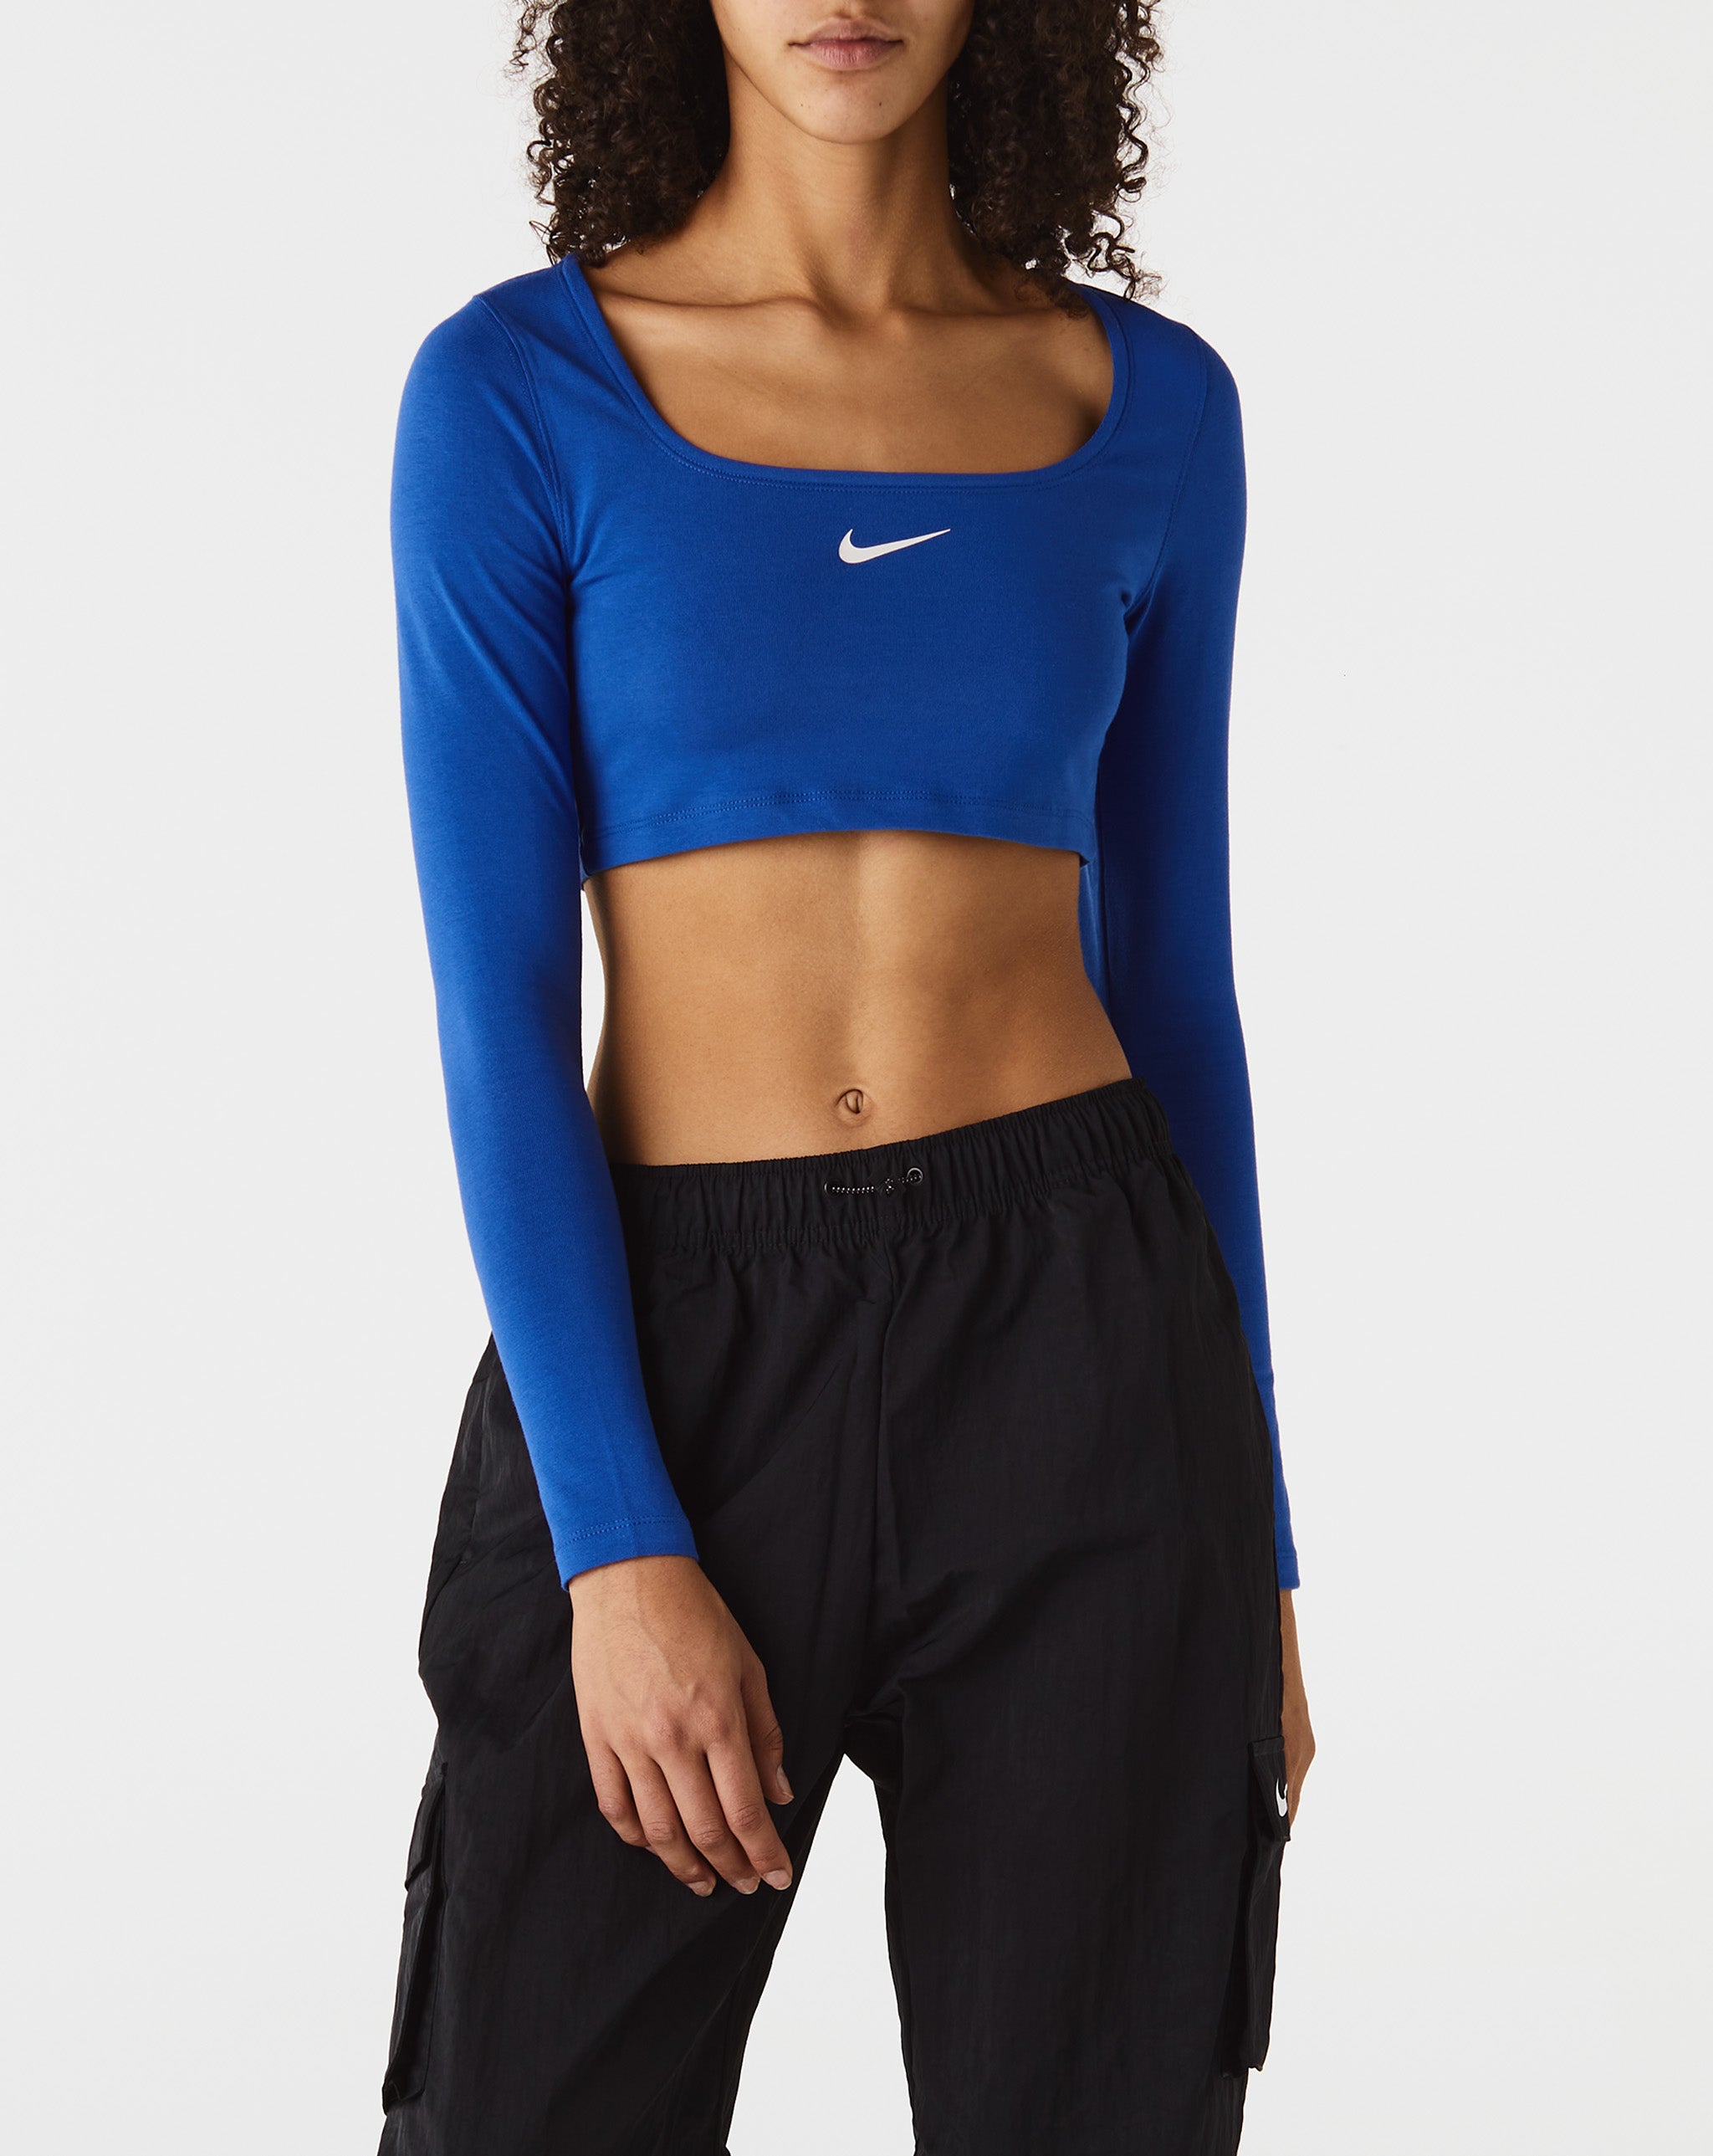 Nike tailwind Women's NSW Cropped Top  - Cheap Urlfreeze Jordan outlet